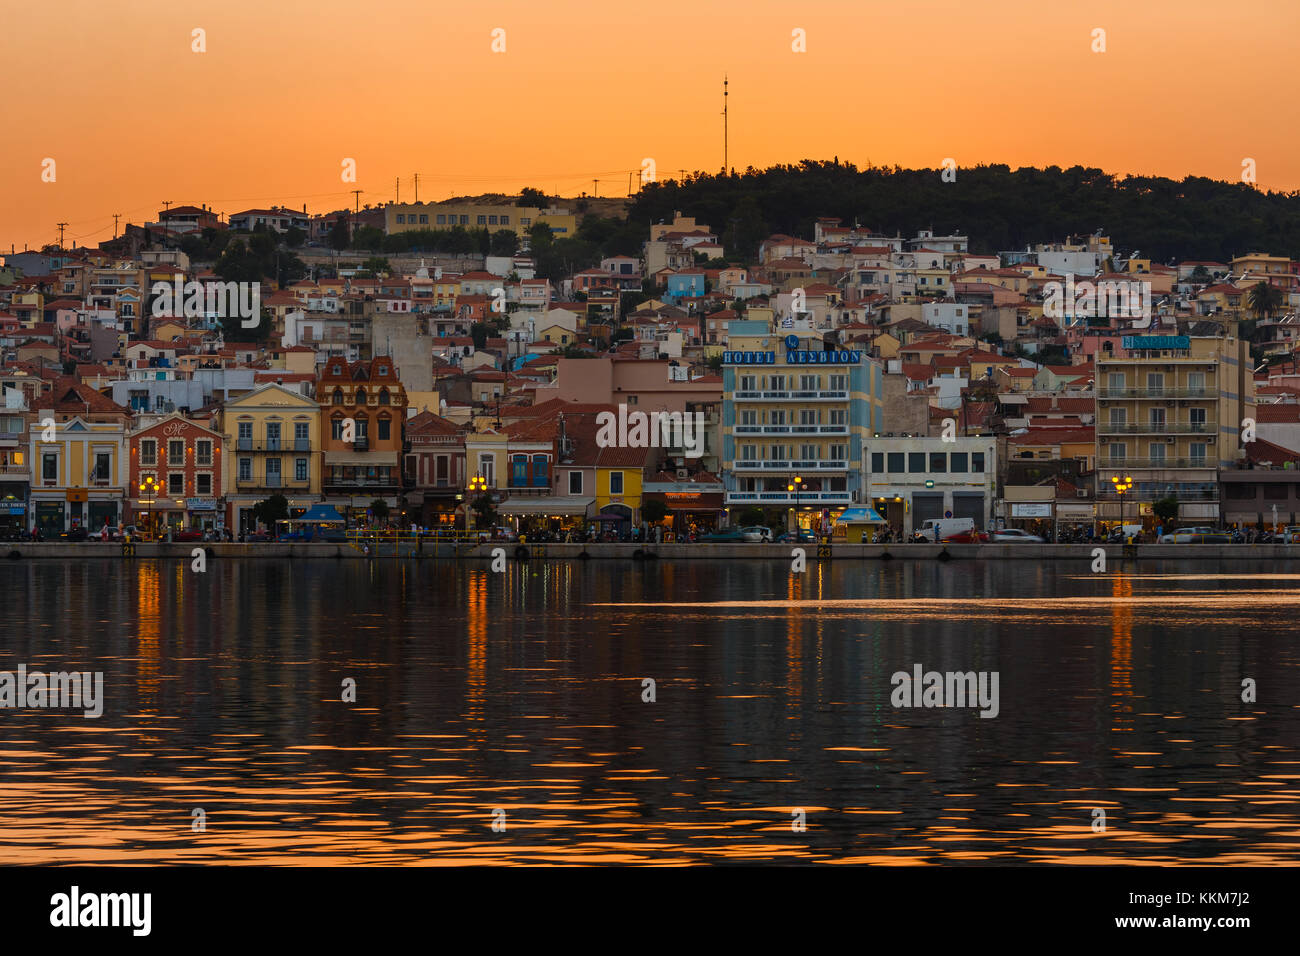 Panoramica della città di mytilene in lesvos Island, Grecia nel pomeriggio. mitilene è la capitale e porto dell'isola di Lesbo. Foto Stock